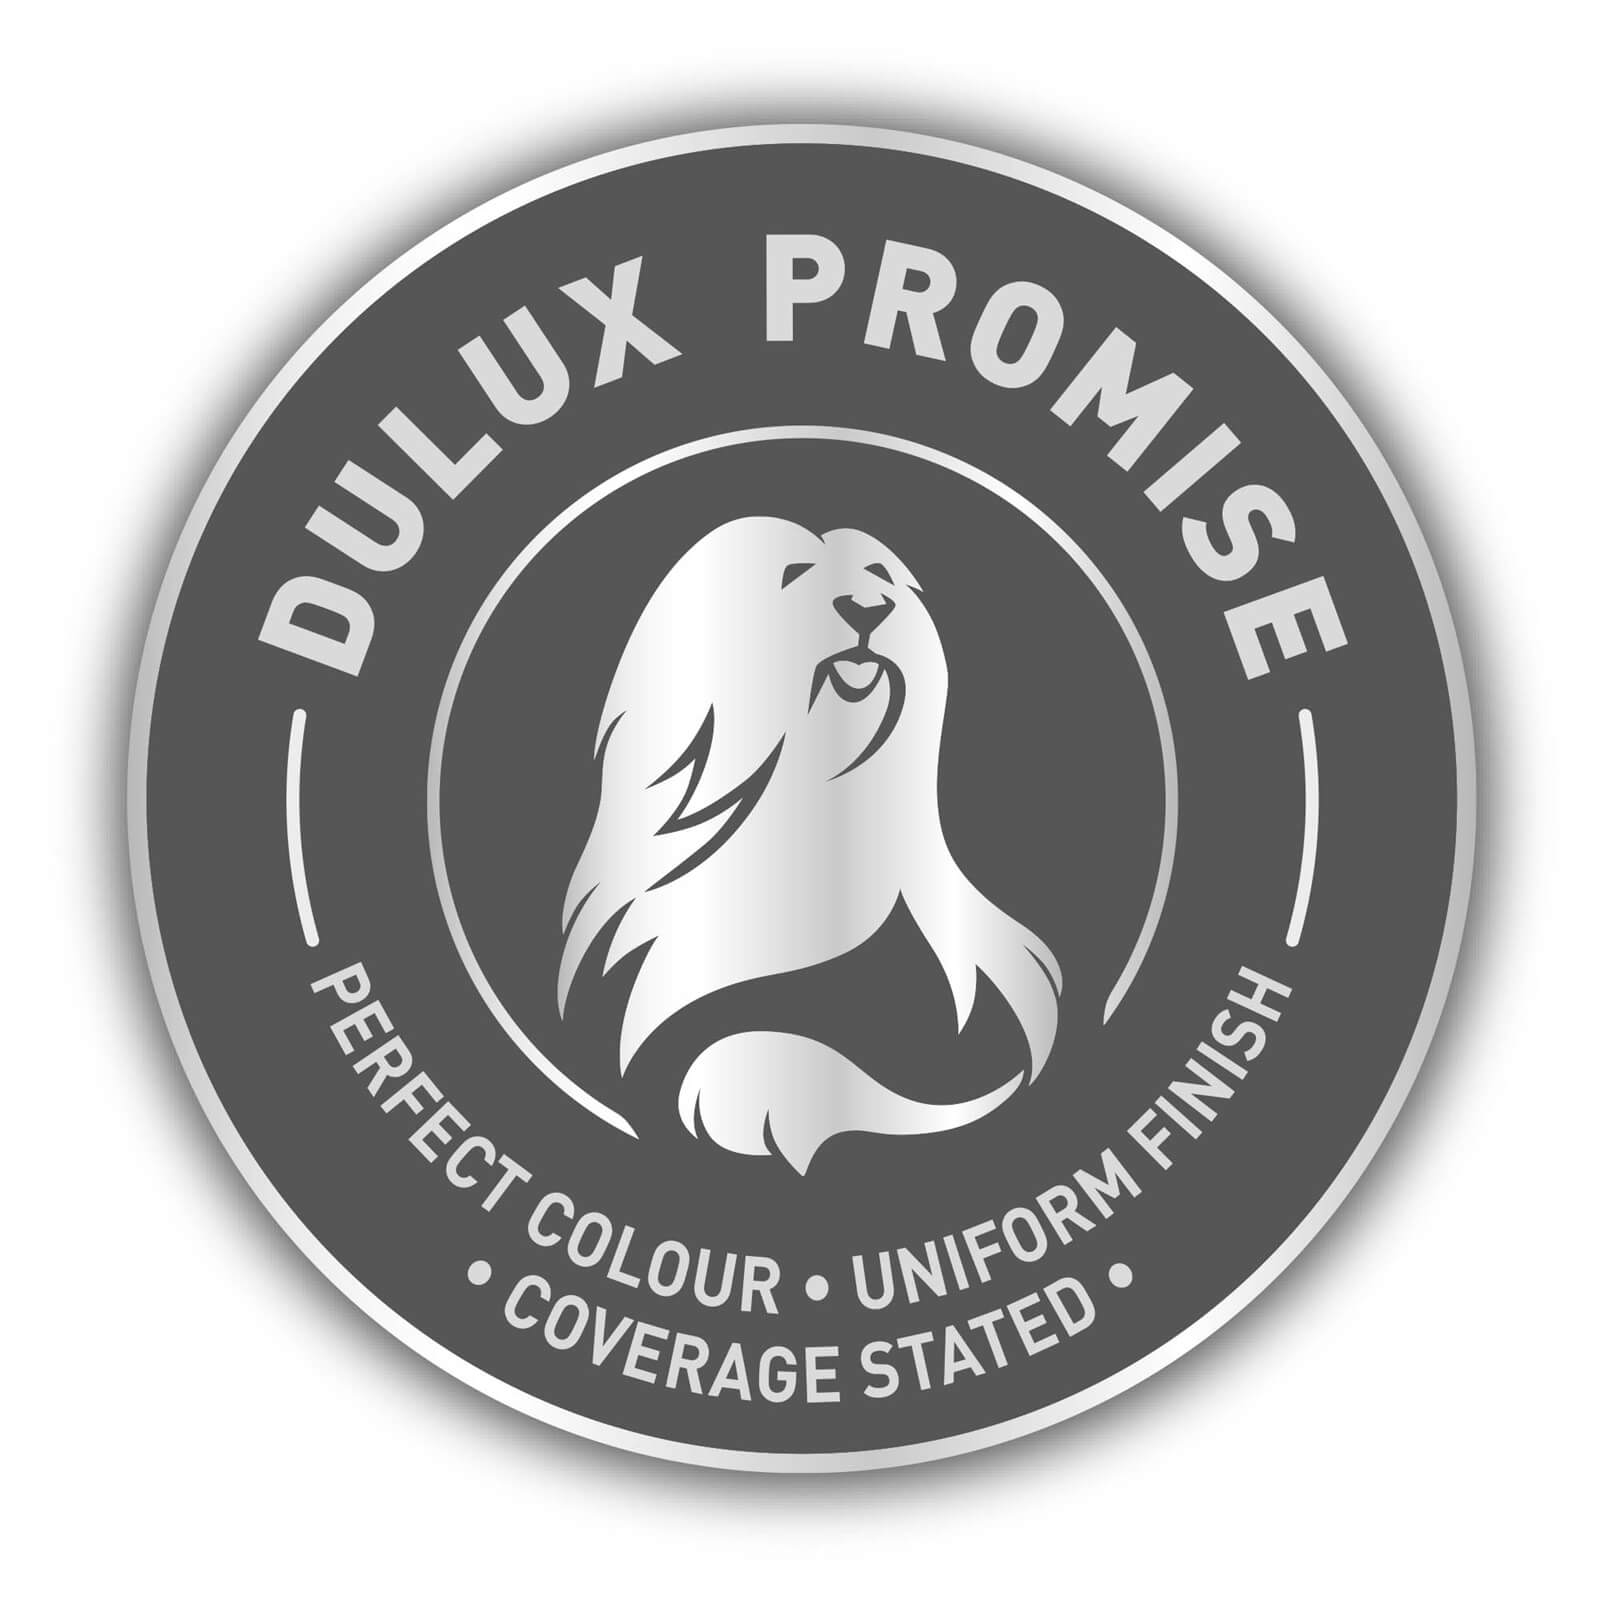 Dulux Easycare Washable & Tough Matt Paint Copper Blush - 2.5L